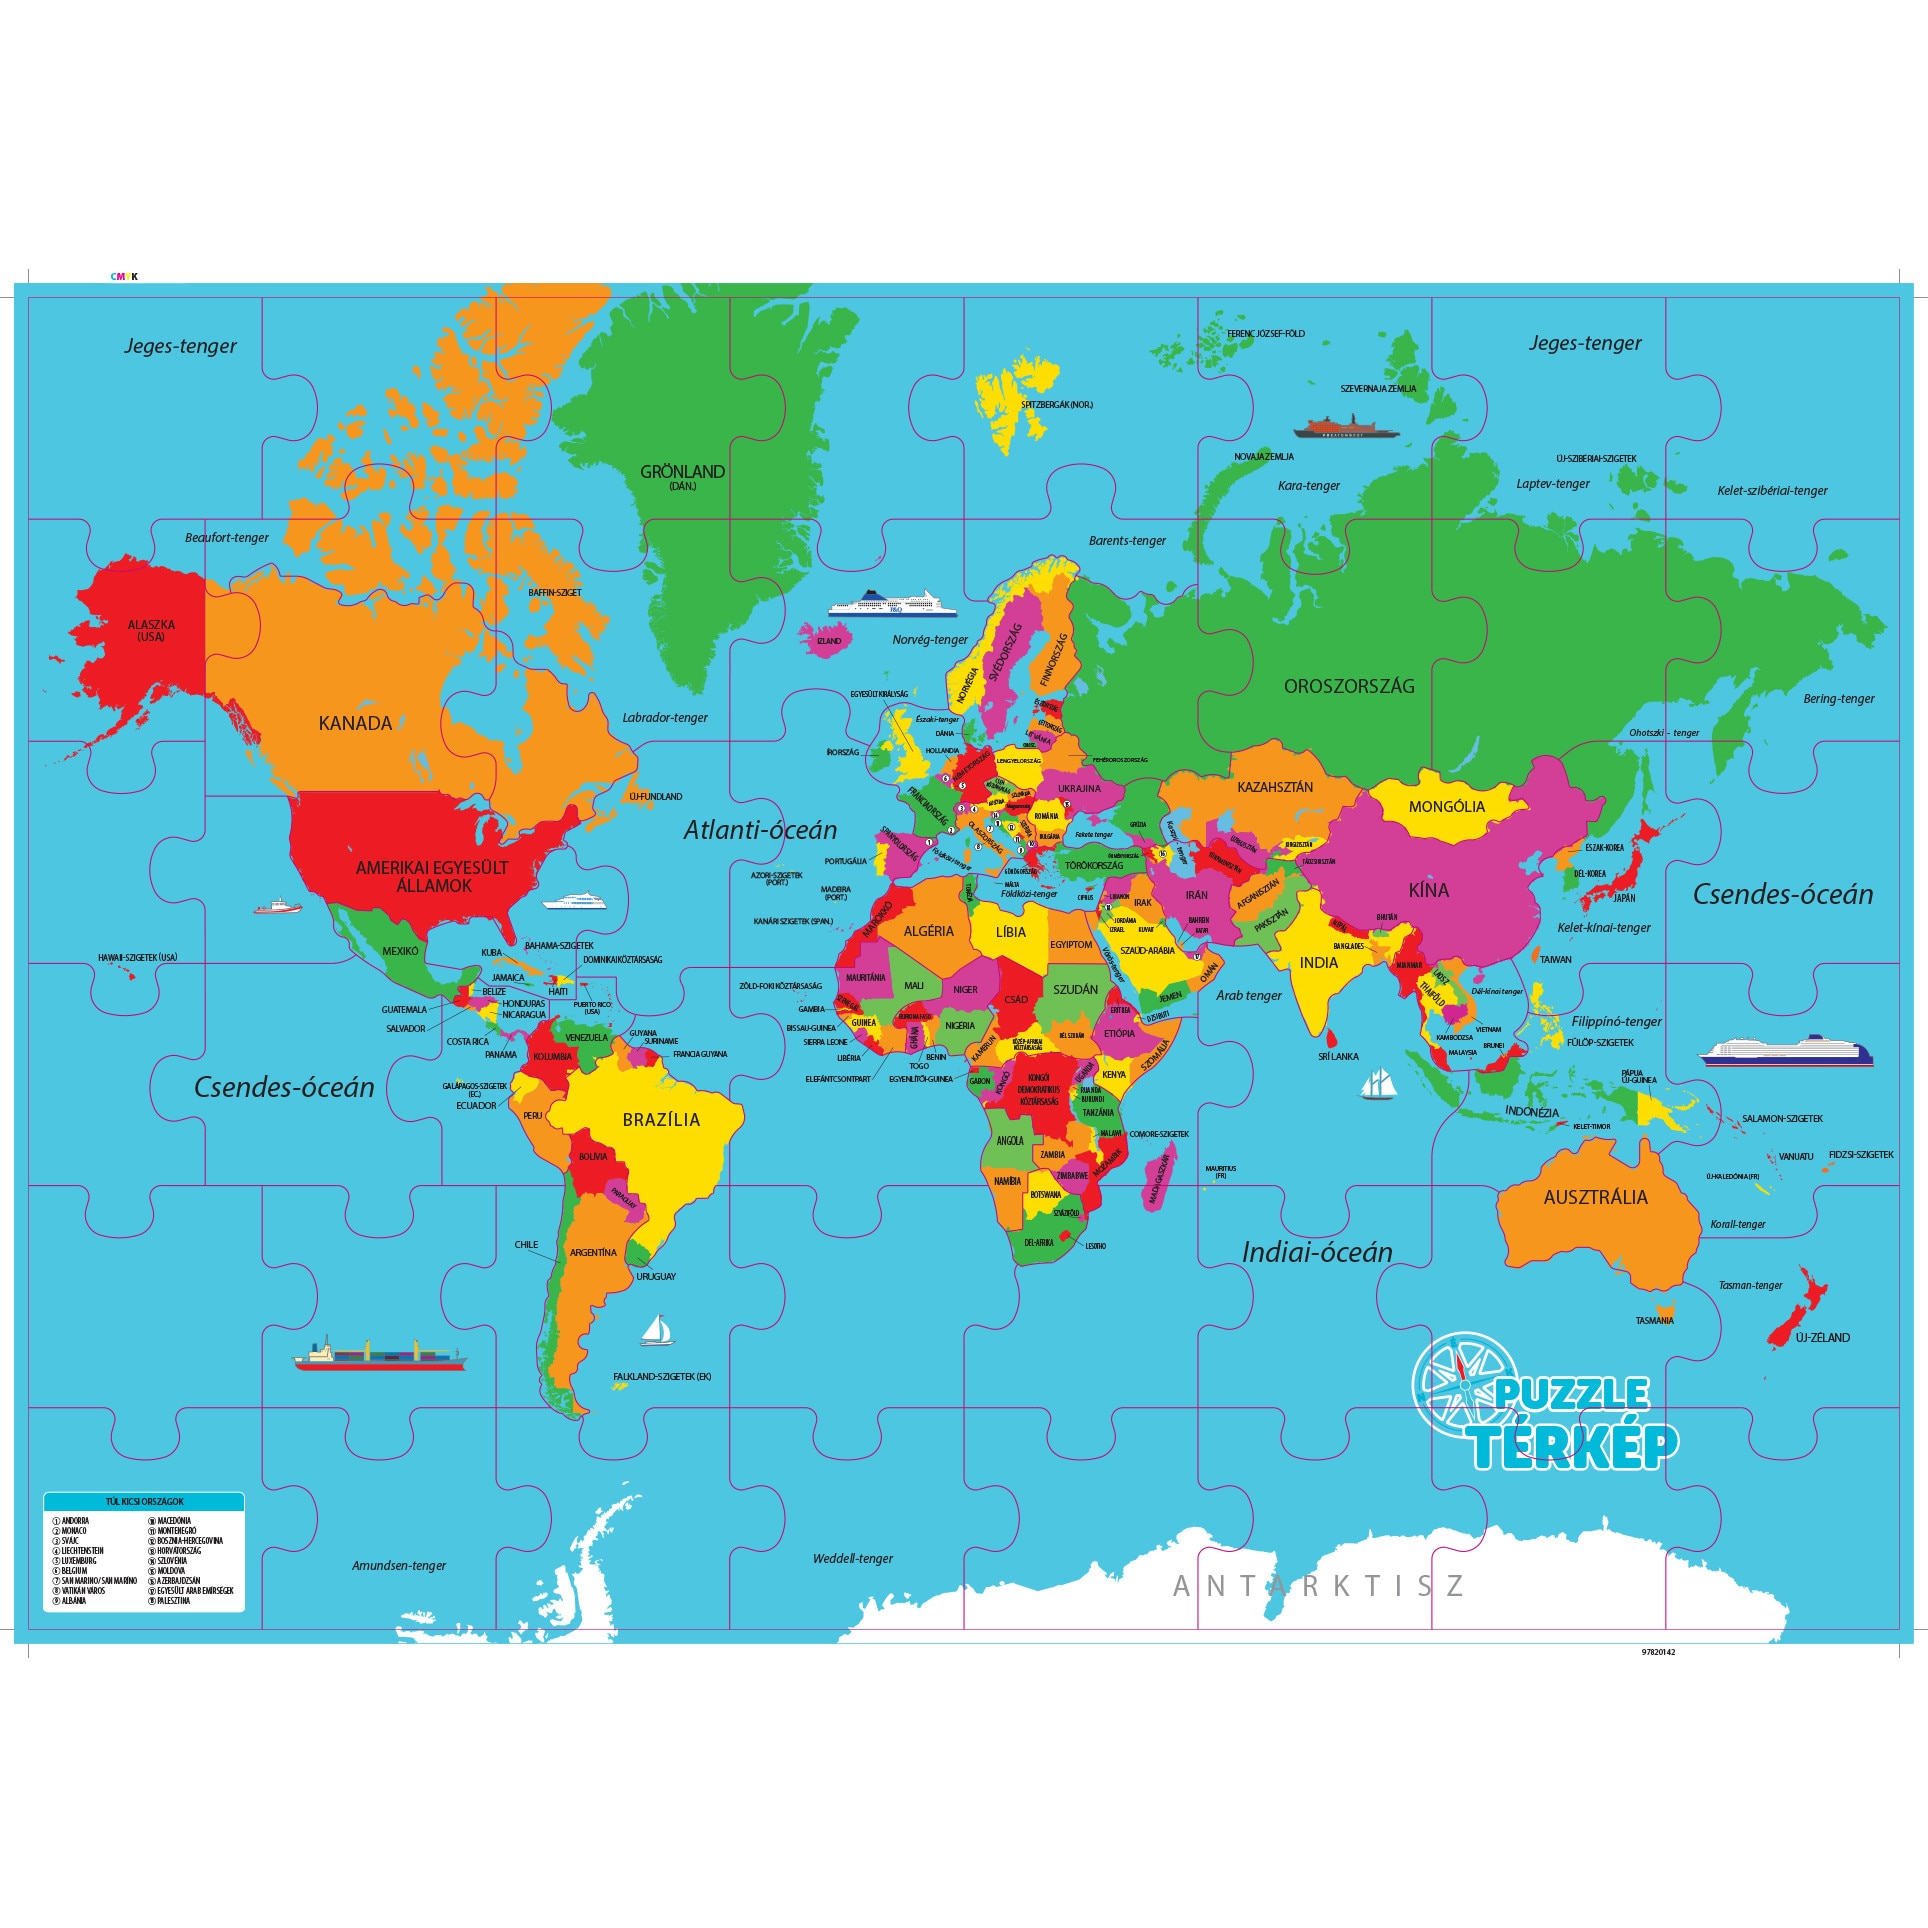 föld térkép Regio 62225 Világ térkép magyarul 48 darabos puzzle   eMAG.hu